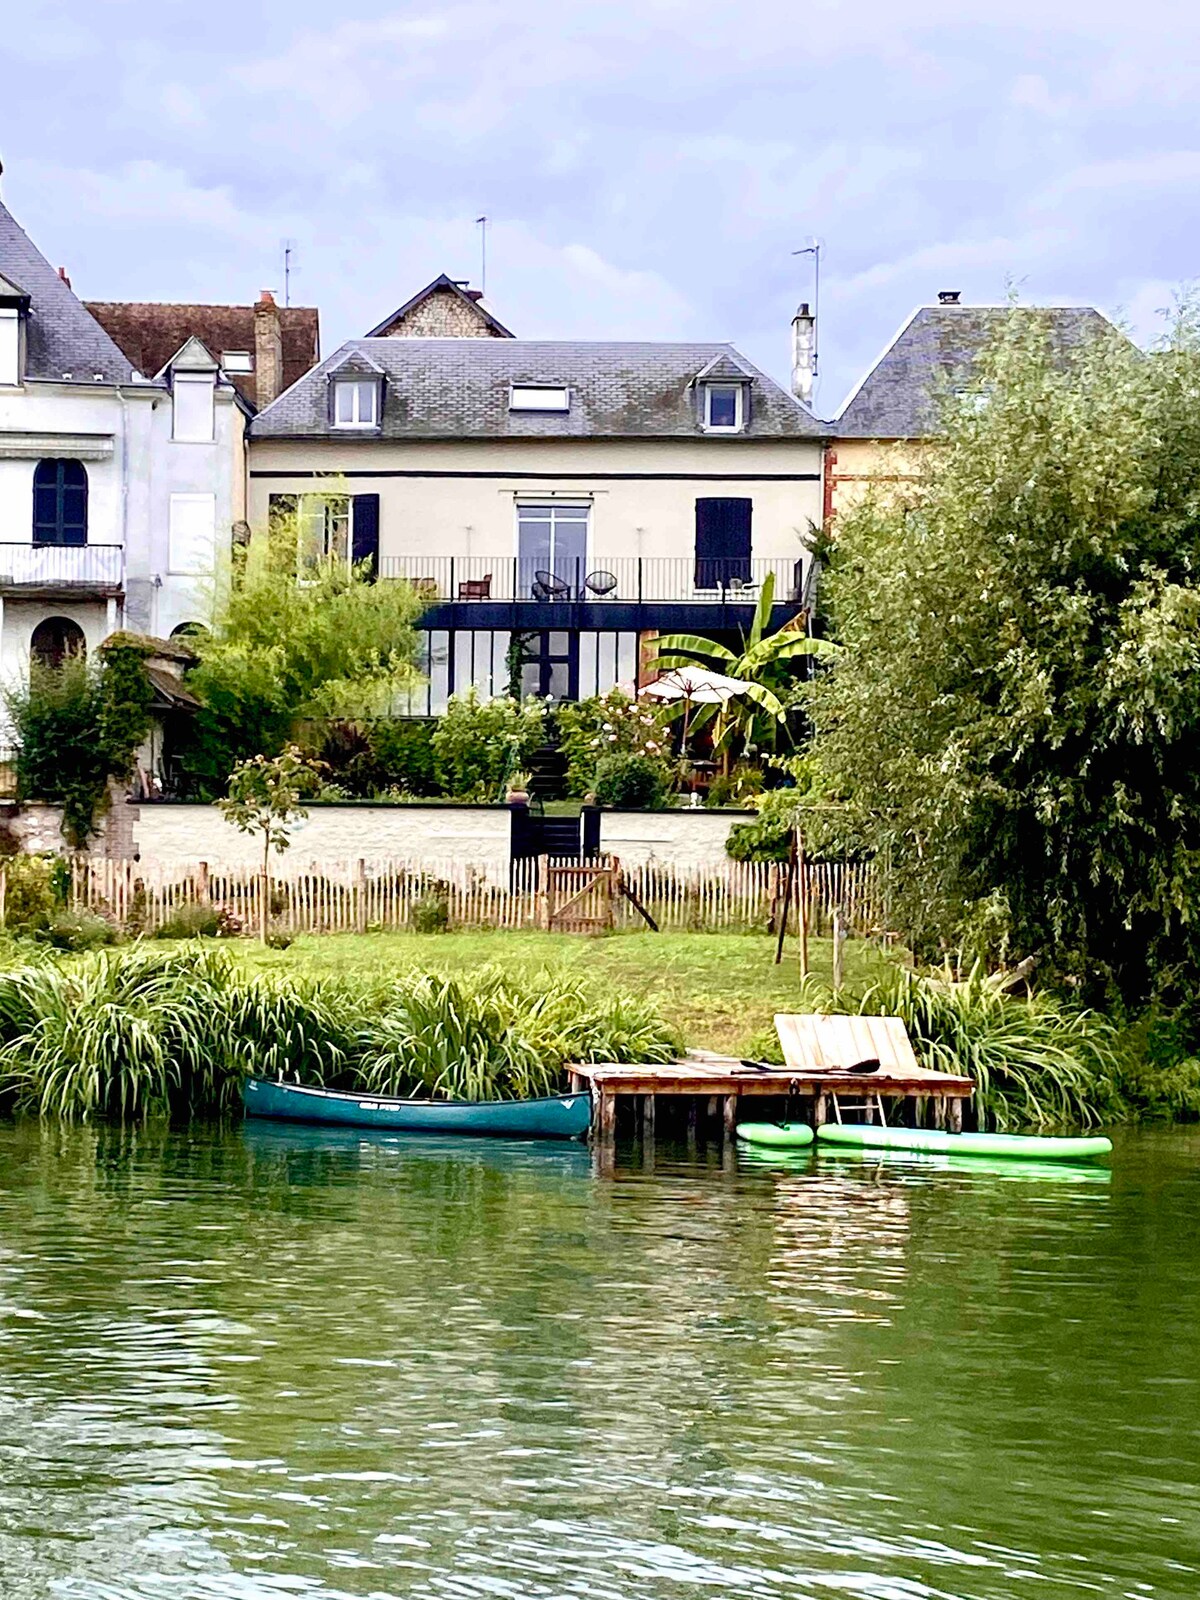 塞纳河畔Grande Maison ，距离巴黎1小时15分钟车程